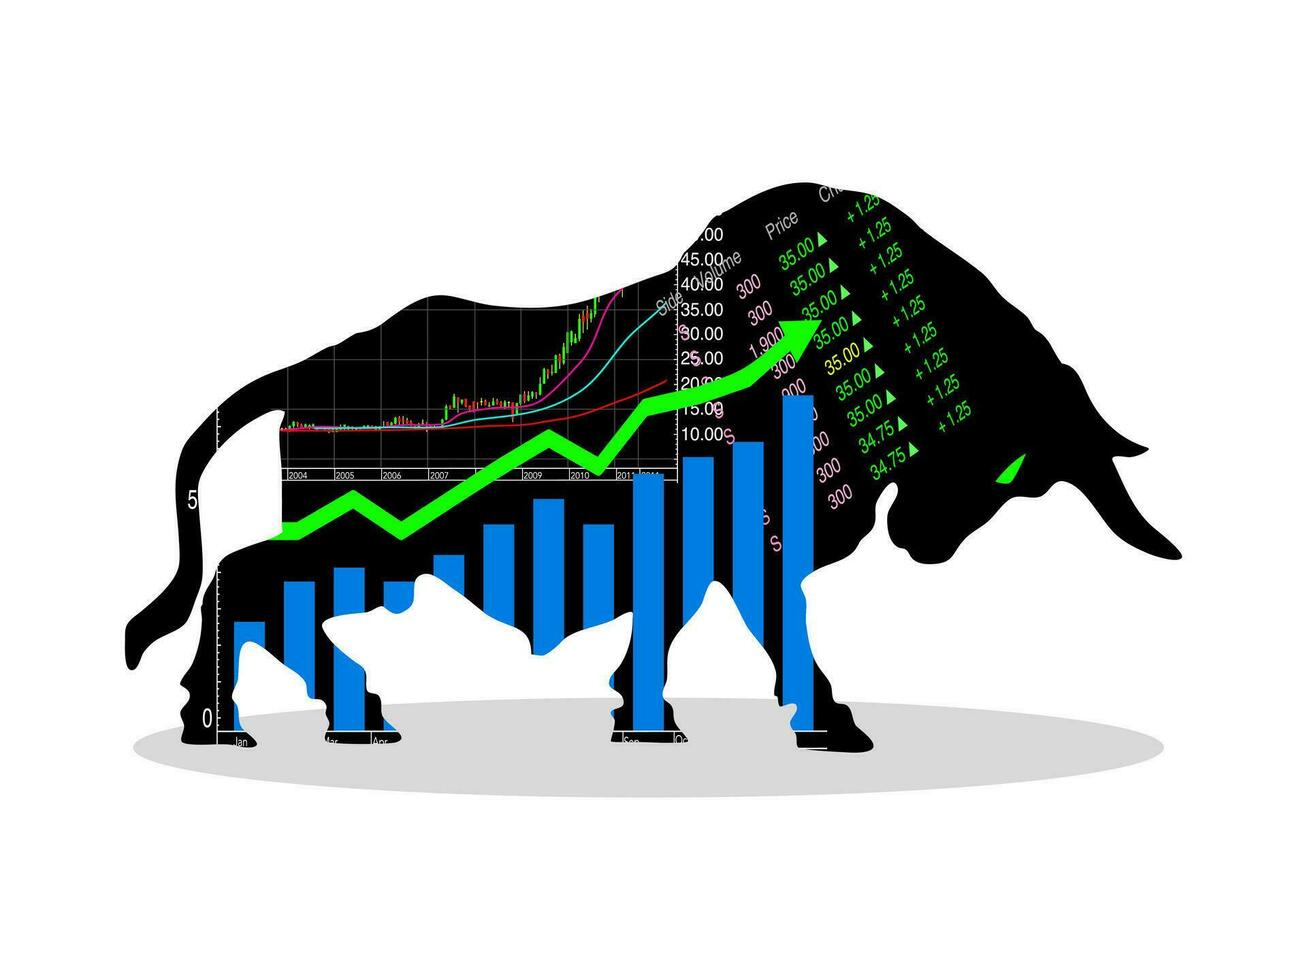 le taureau marché lequel en hausse prix de titres sont attendu. financier et Stock investissement marché concept vecteur